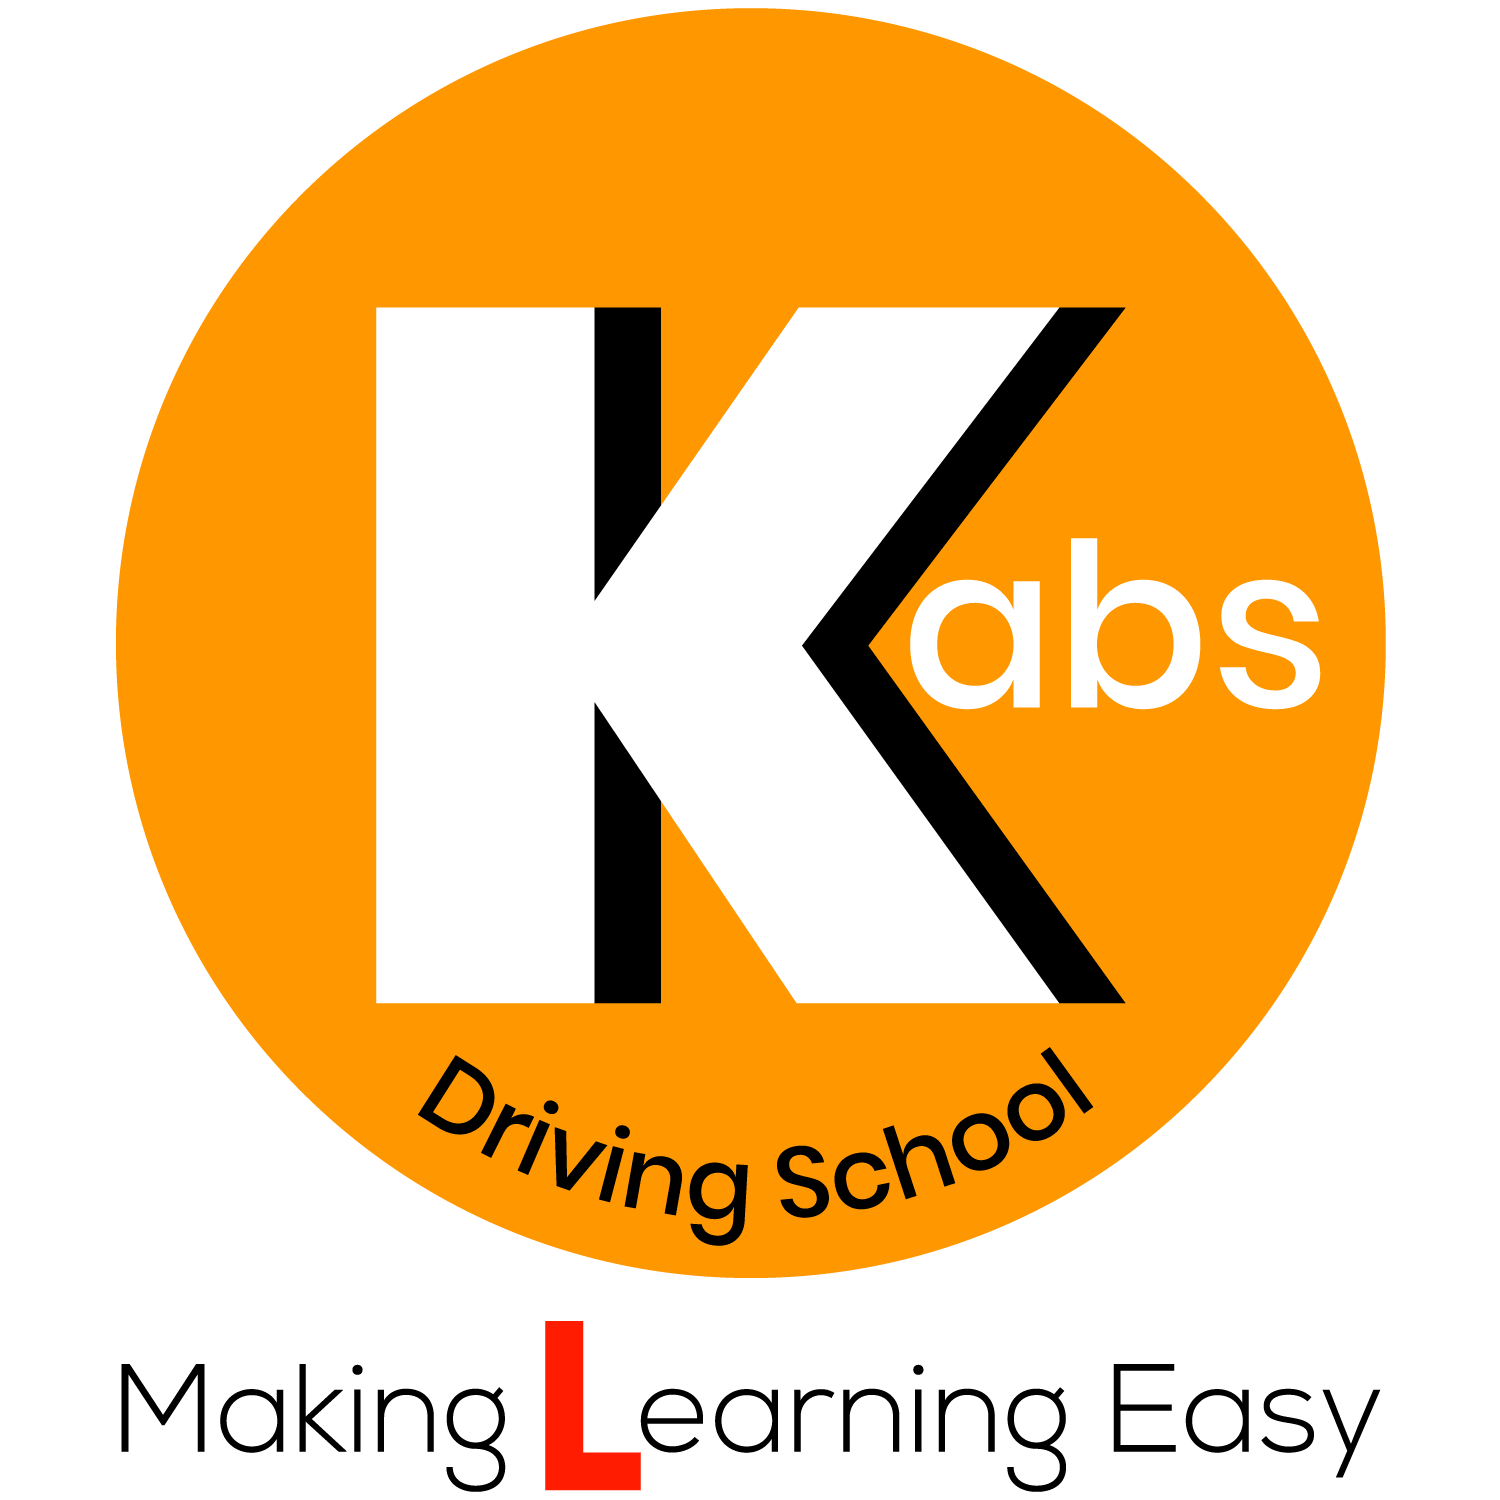 kabs driving school